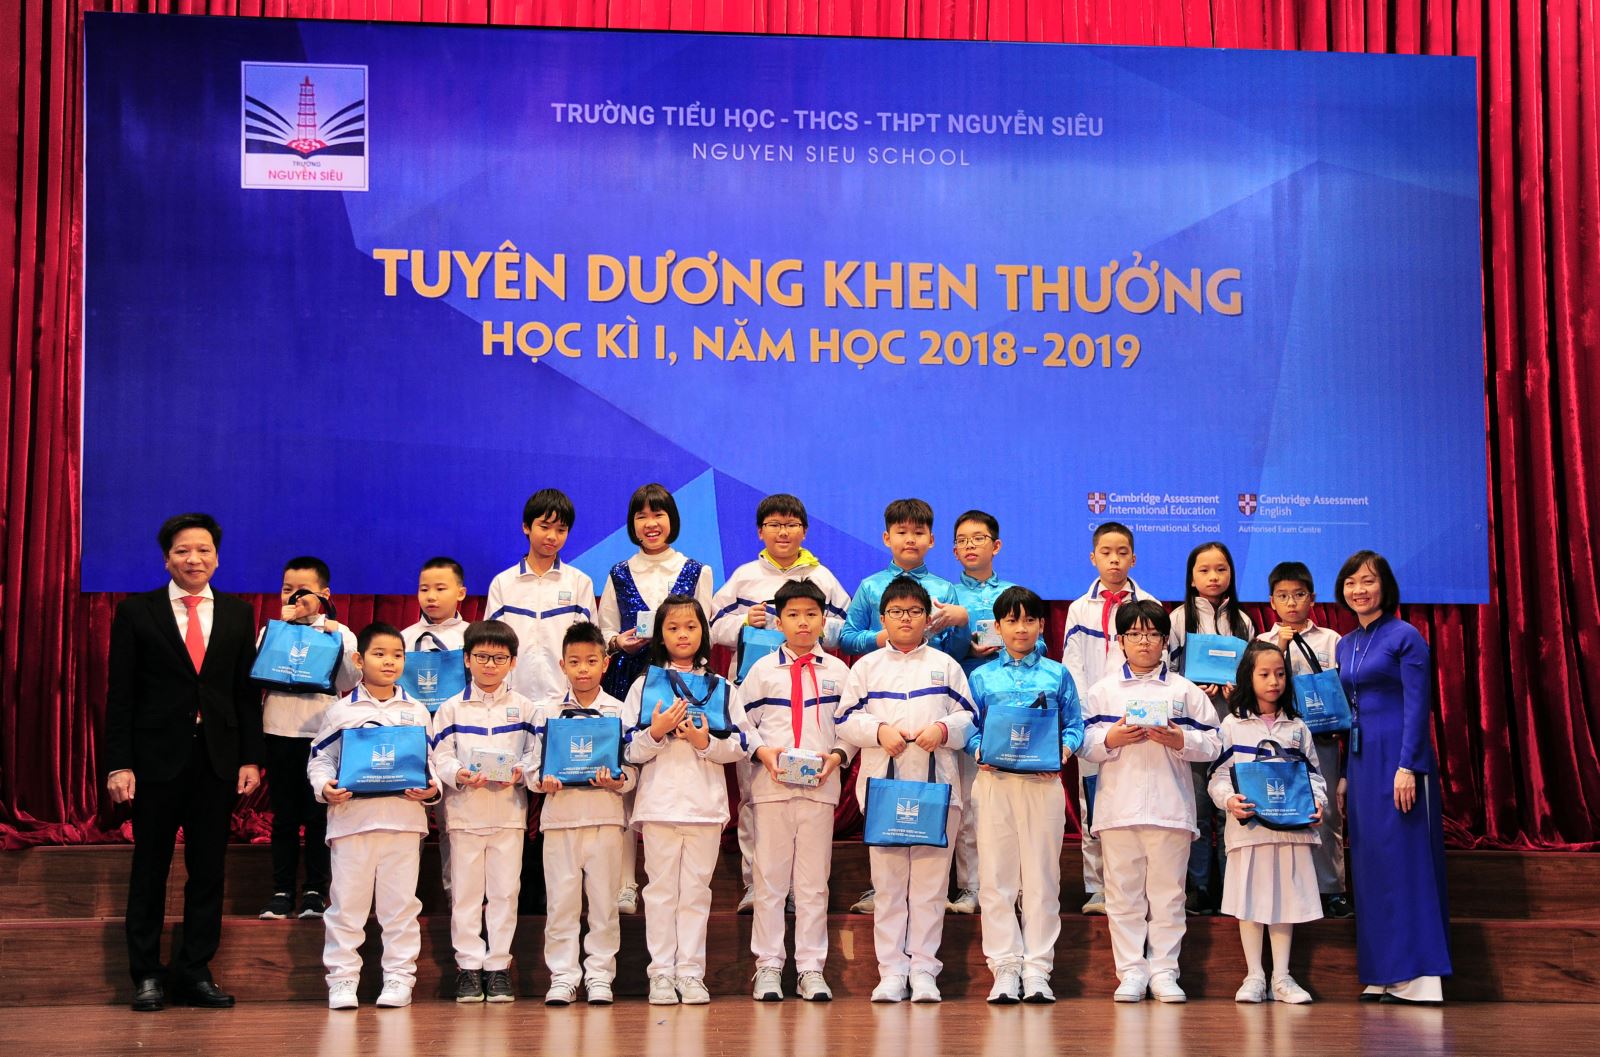 Tuyên dương, khen thưởng học kỳ I (2018-2019) học sinh Tiểu học